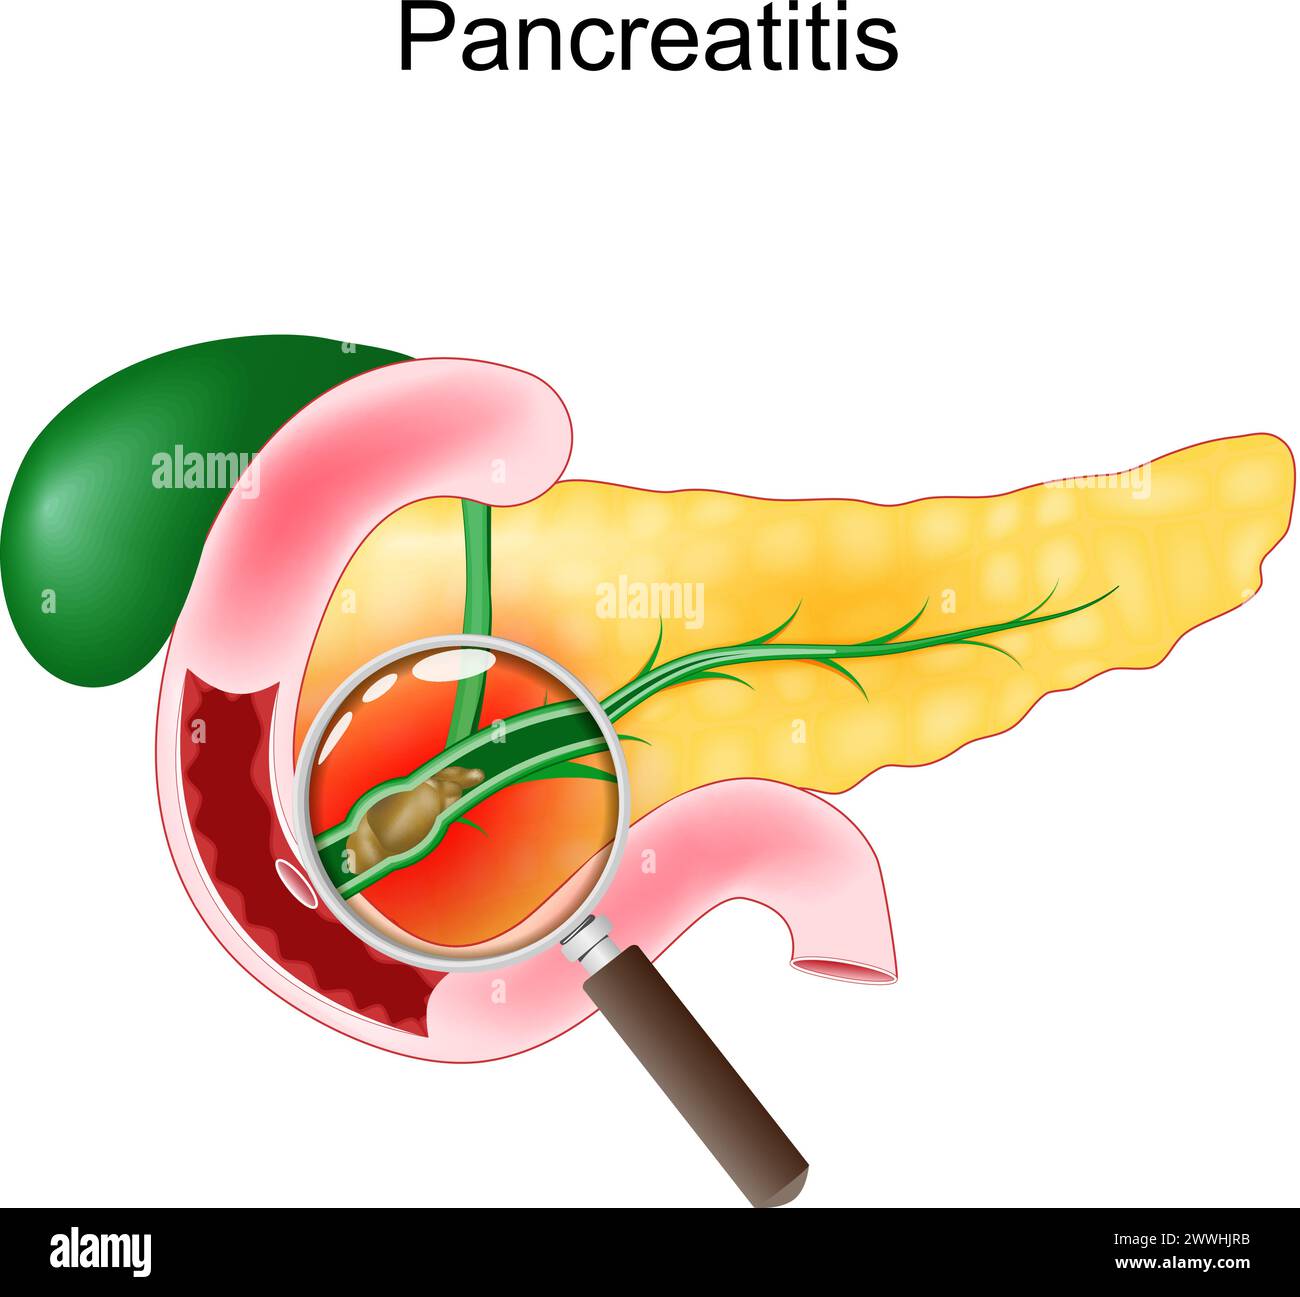 Pancreatite acuta. Primo piano di un pancreas realistico, duodeno e cistifellea. Sezione trasversale di un dotto pancreatico con calcoli biliari vista tramite un magnete Illustrazione Vettoriale